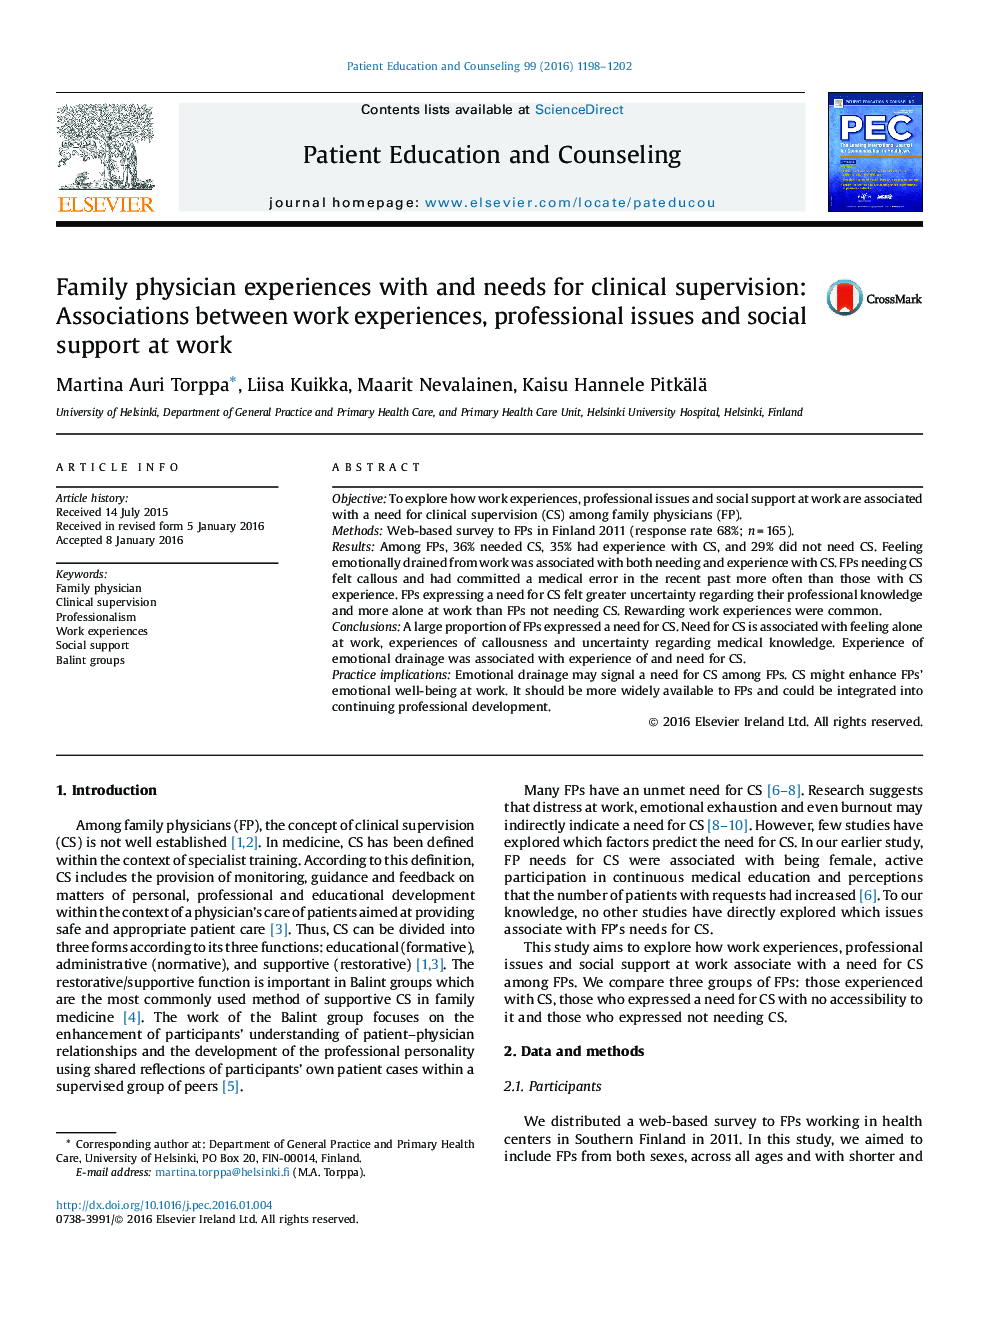 پزشک خانواده با نیازهای لازم برای نظارت بالینی: ارتباط بین تجارب کار، مسائل حرفه ای و حمایت اجتماعی در محل کار 